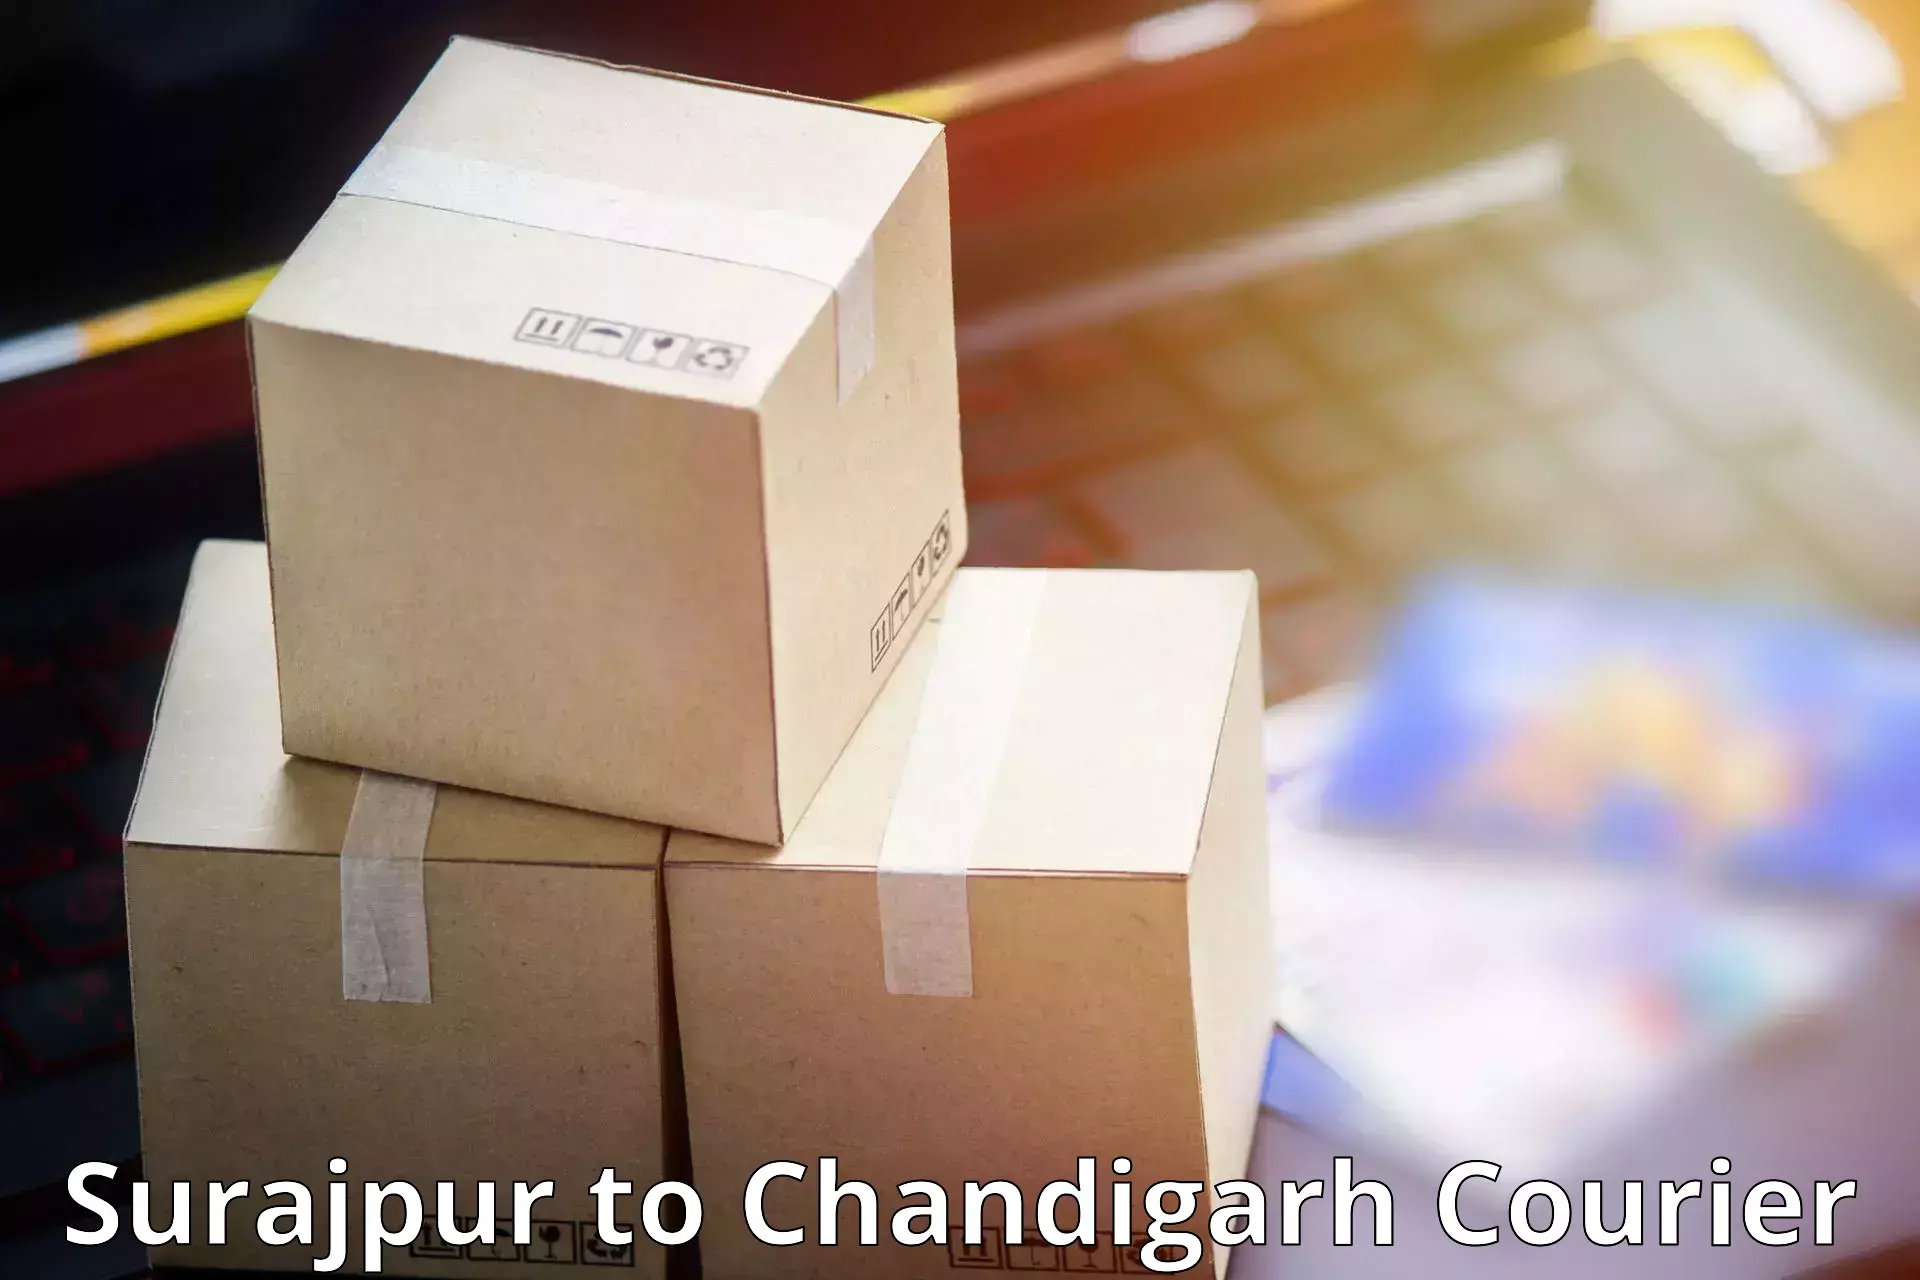 Digital courier platforms Surajpur to Chandigarh